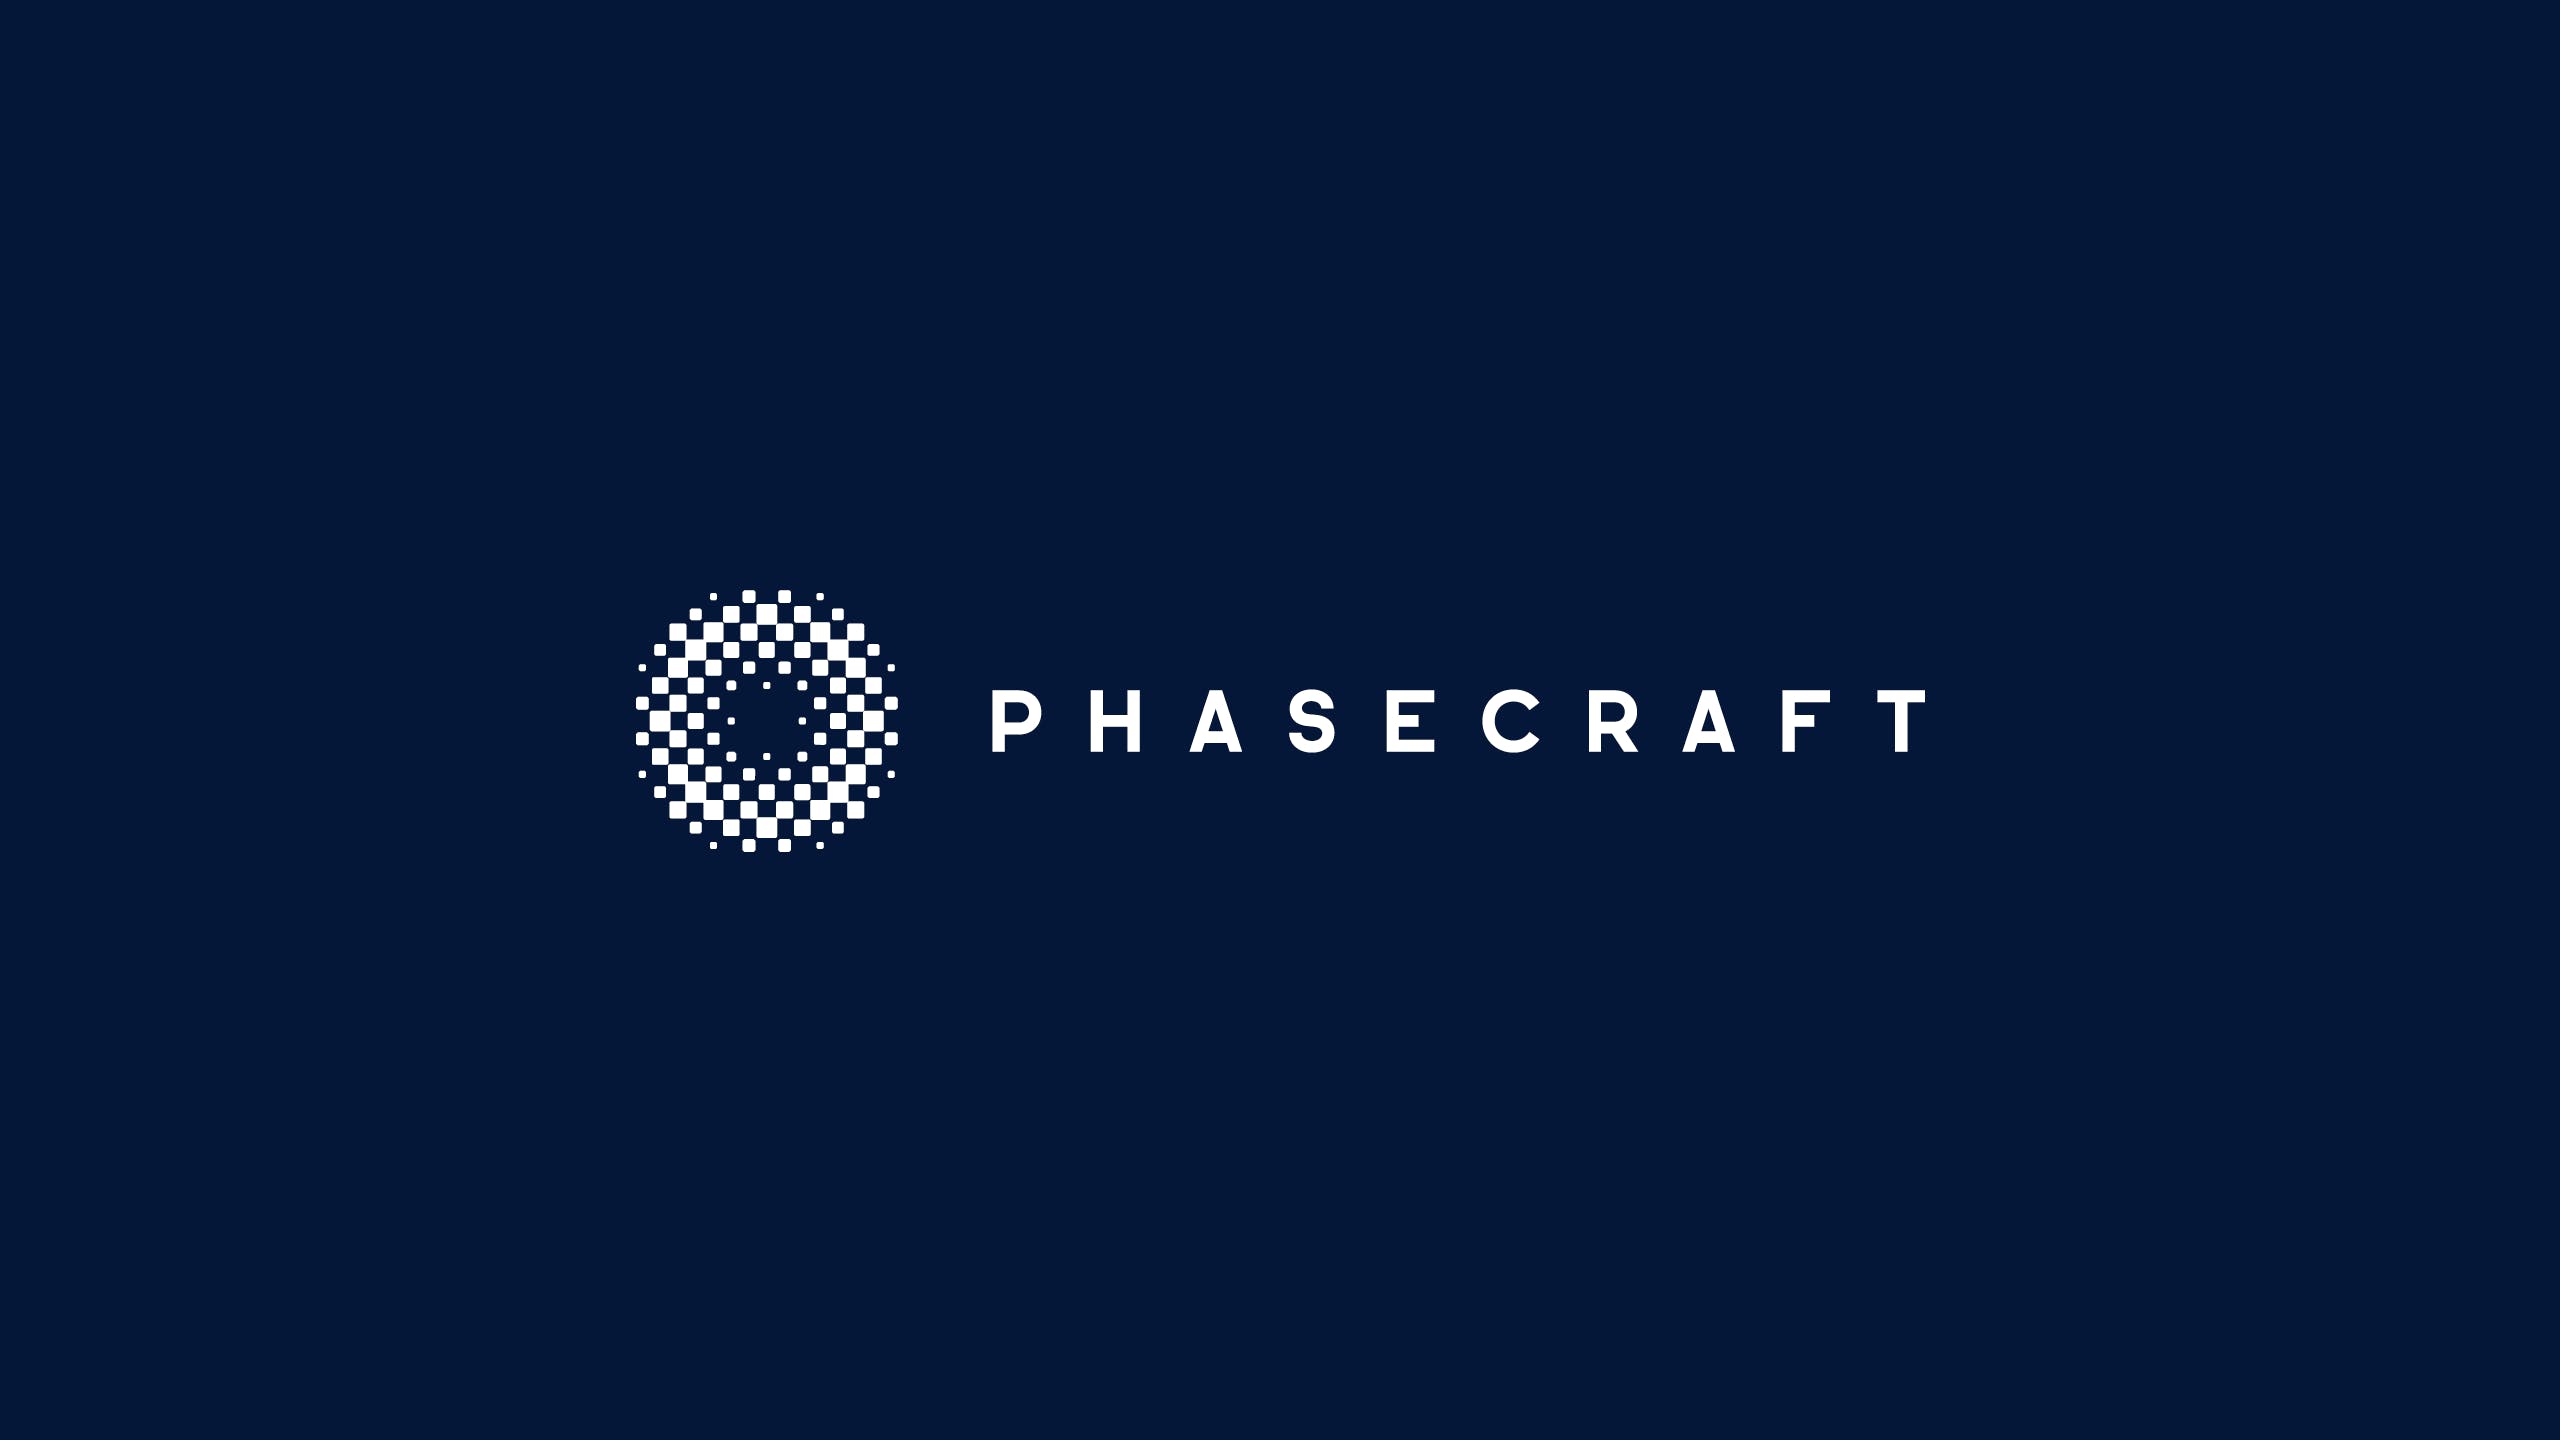 Phasecraft